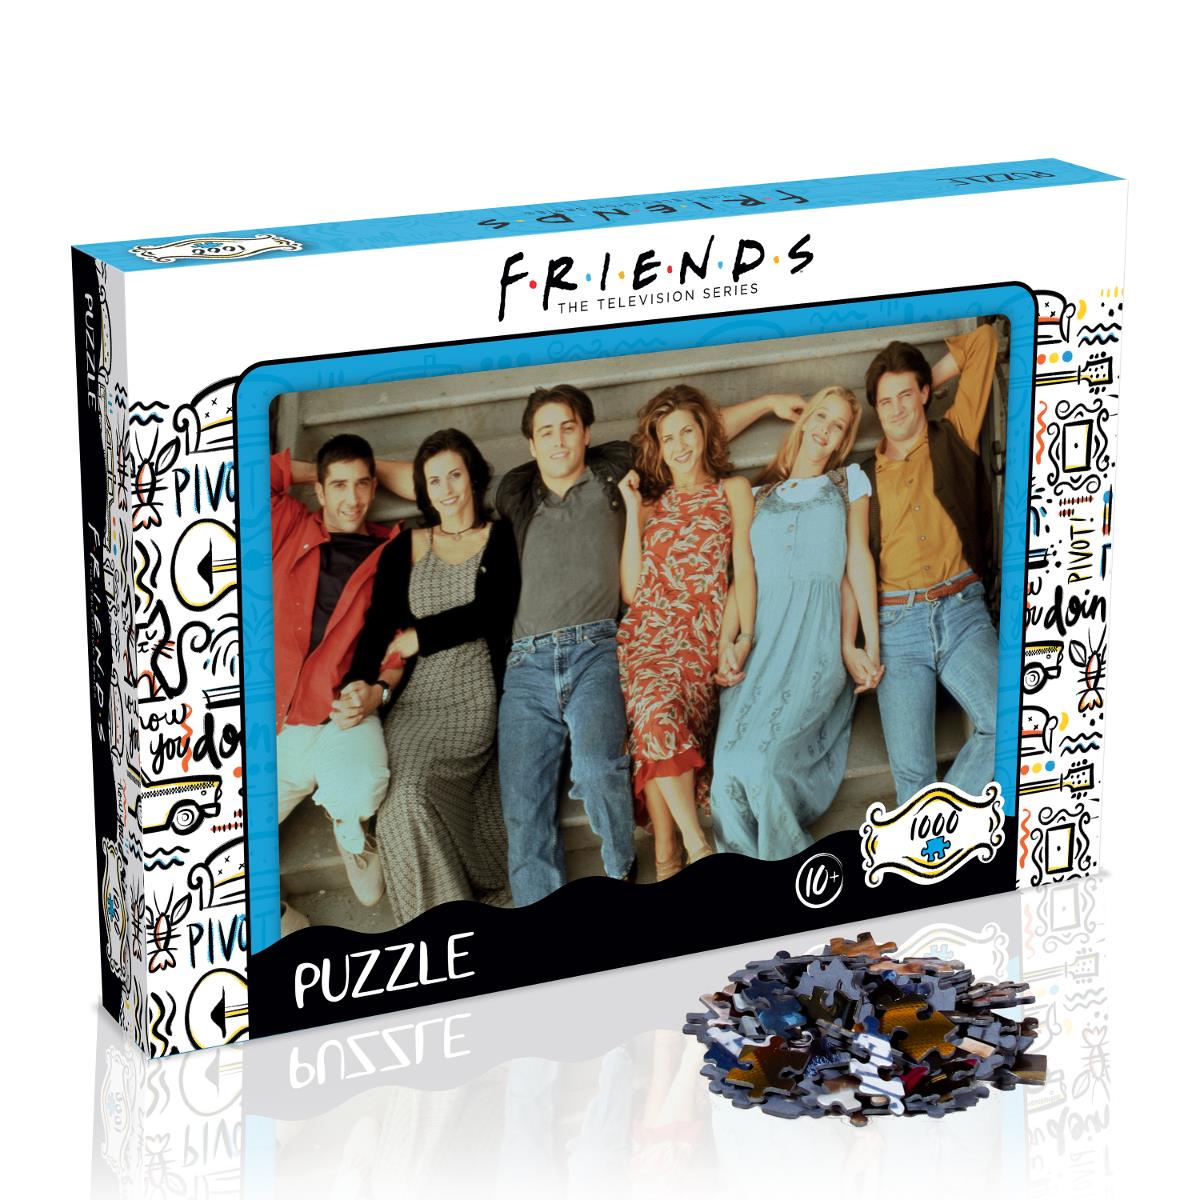 Puzzle Friend Best Moments, 1 000 pieces